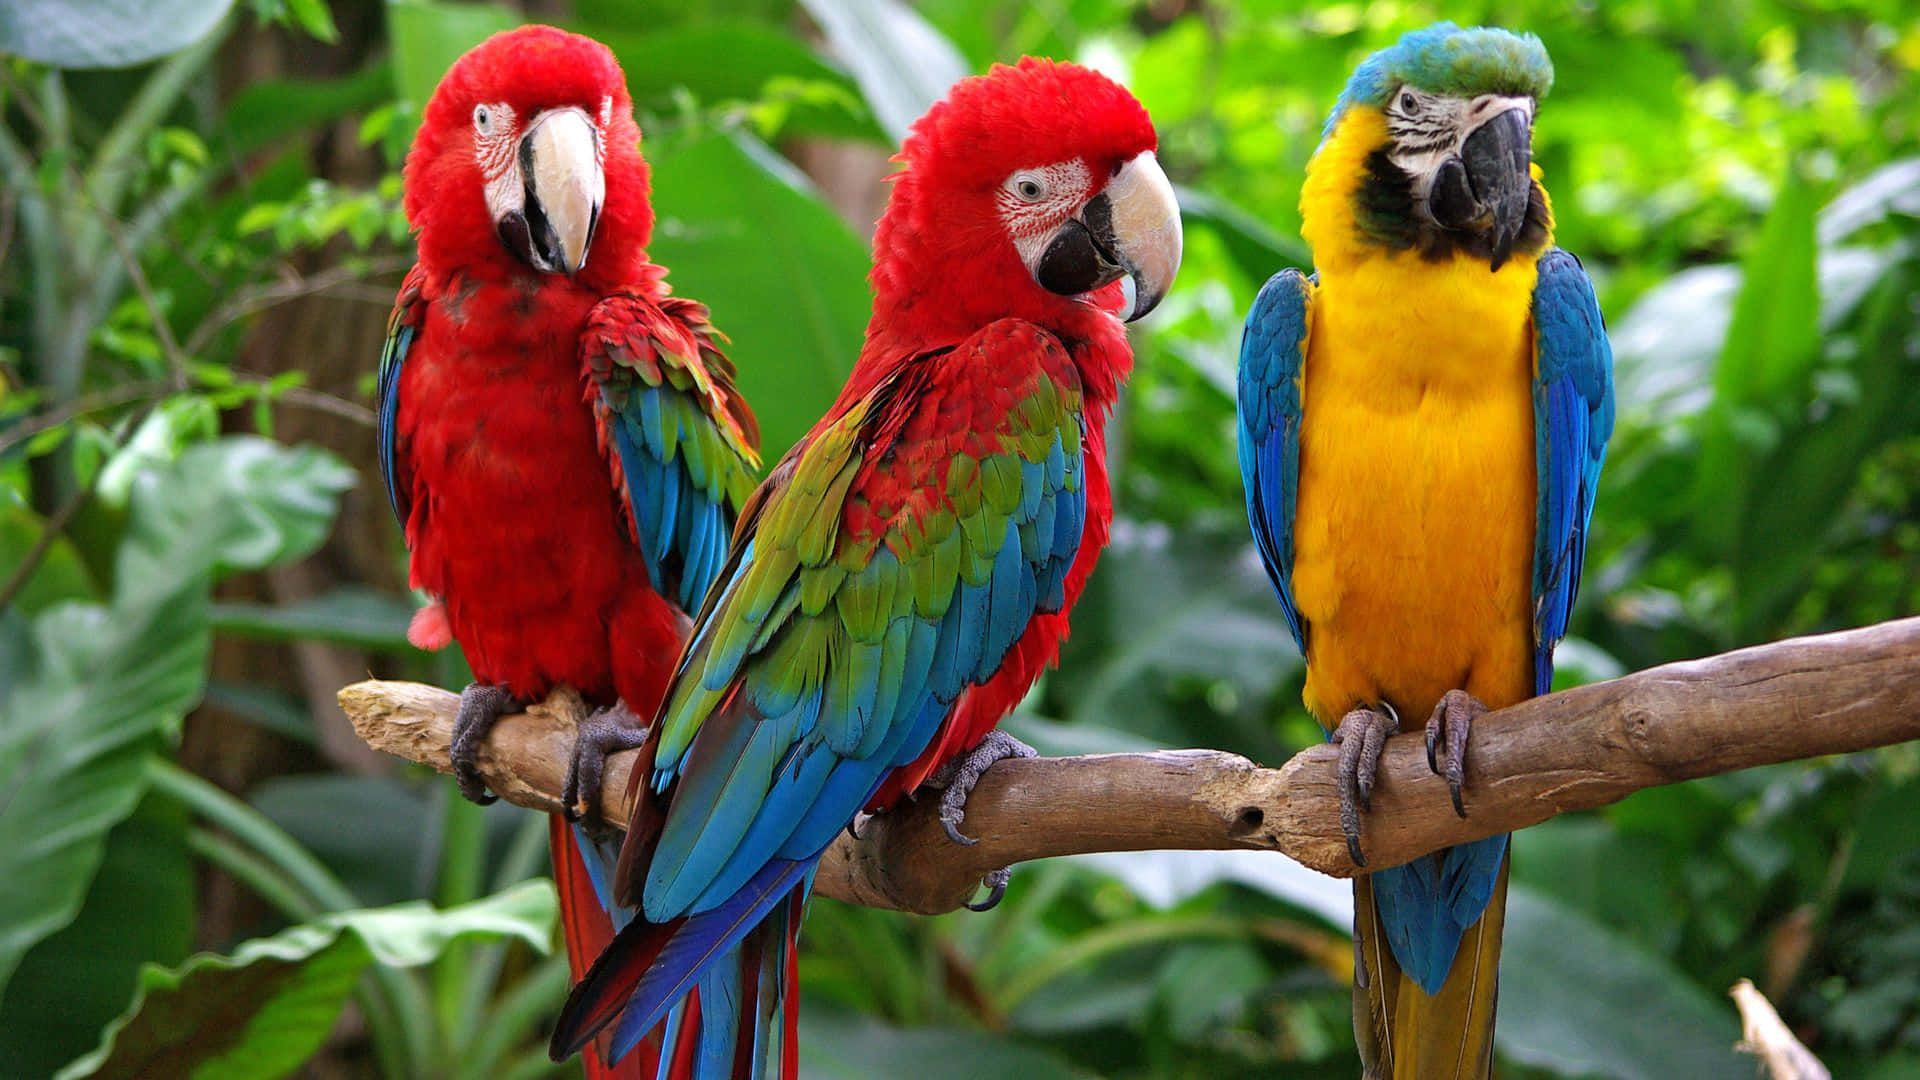  Papagei Hintergrundbild 1920x1080. Downloaden Dreibunte Papageien Sitzen Auf Einem Ast